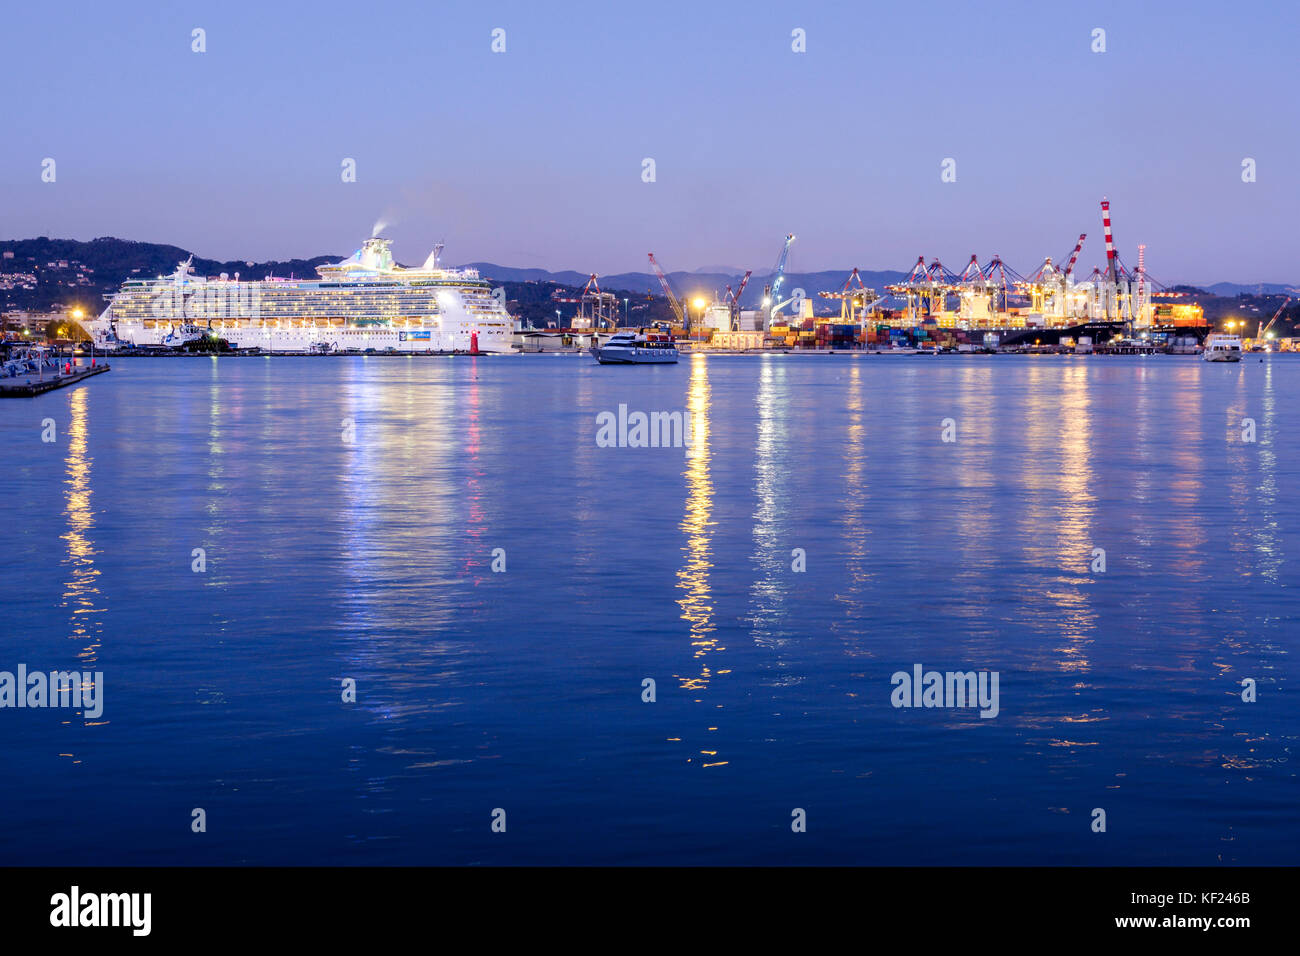 Hafen La Spezia, Containerhafen und Kreuzfahrtschiff Royal Caribbean, Ligurien, Italien Stockfoto